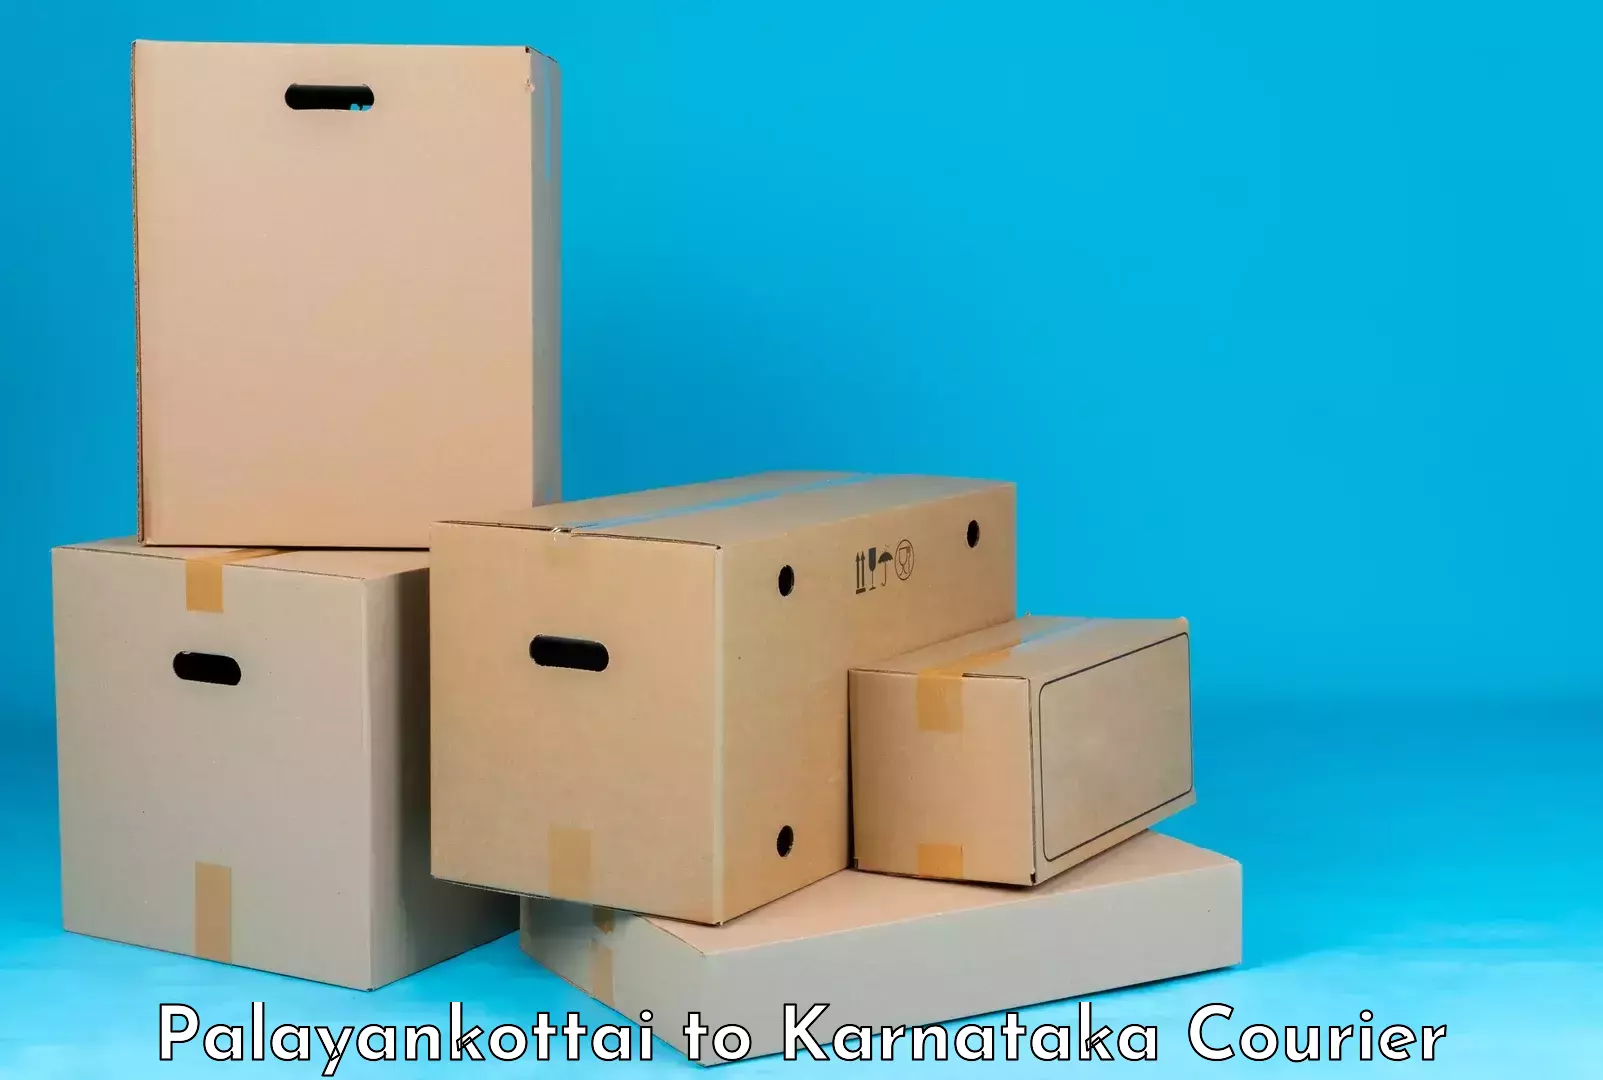 Luggage shipping options Palayankottai to Karnataka